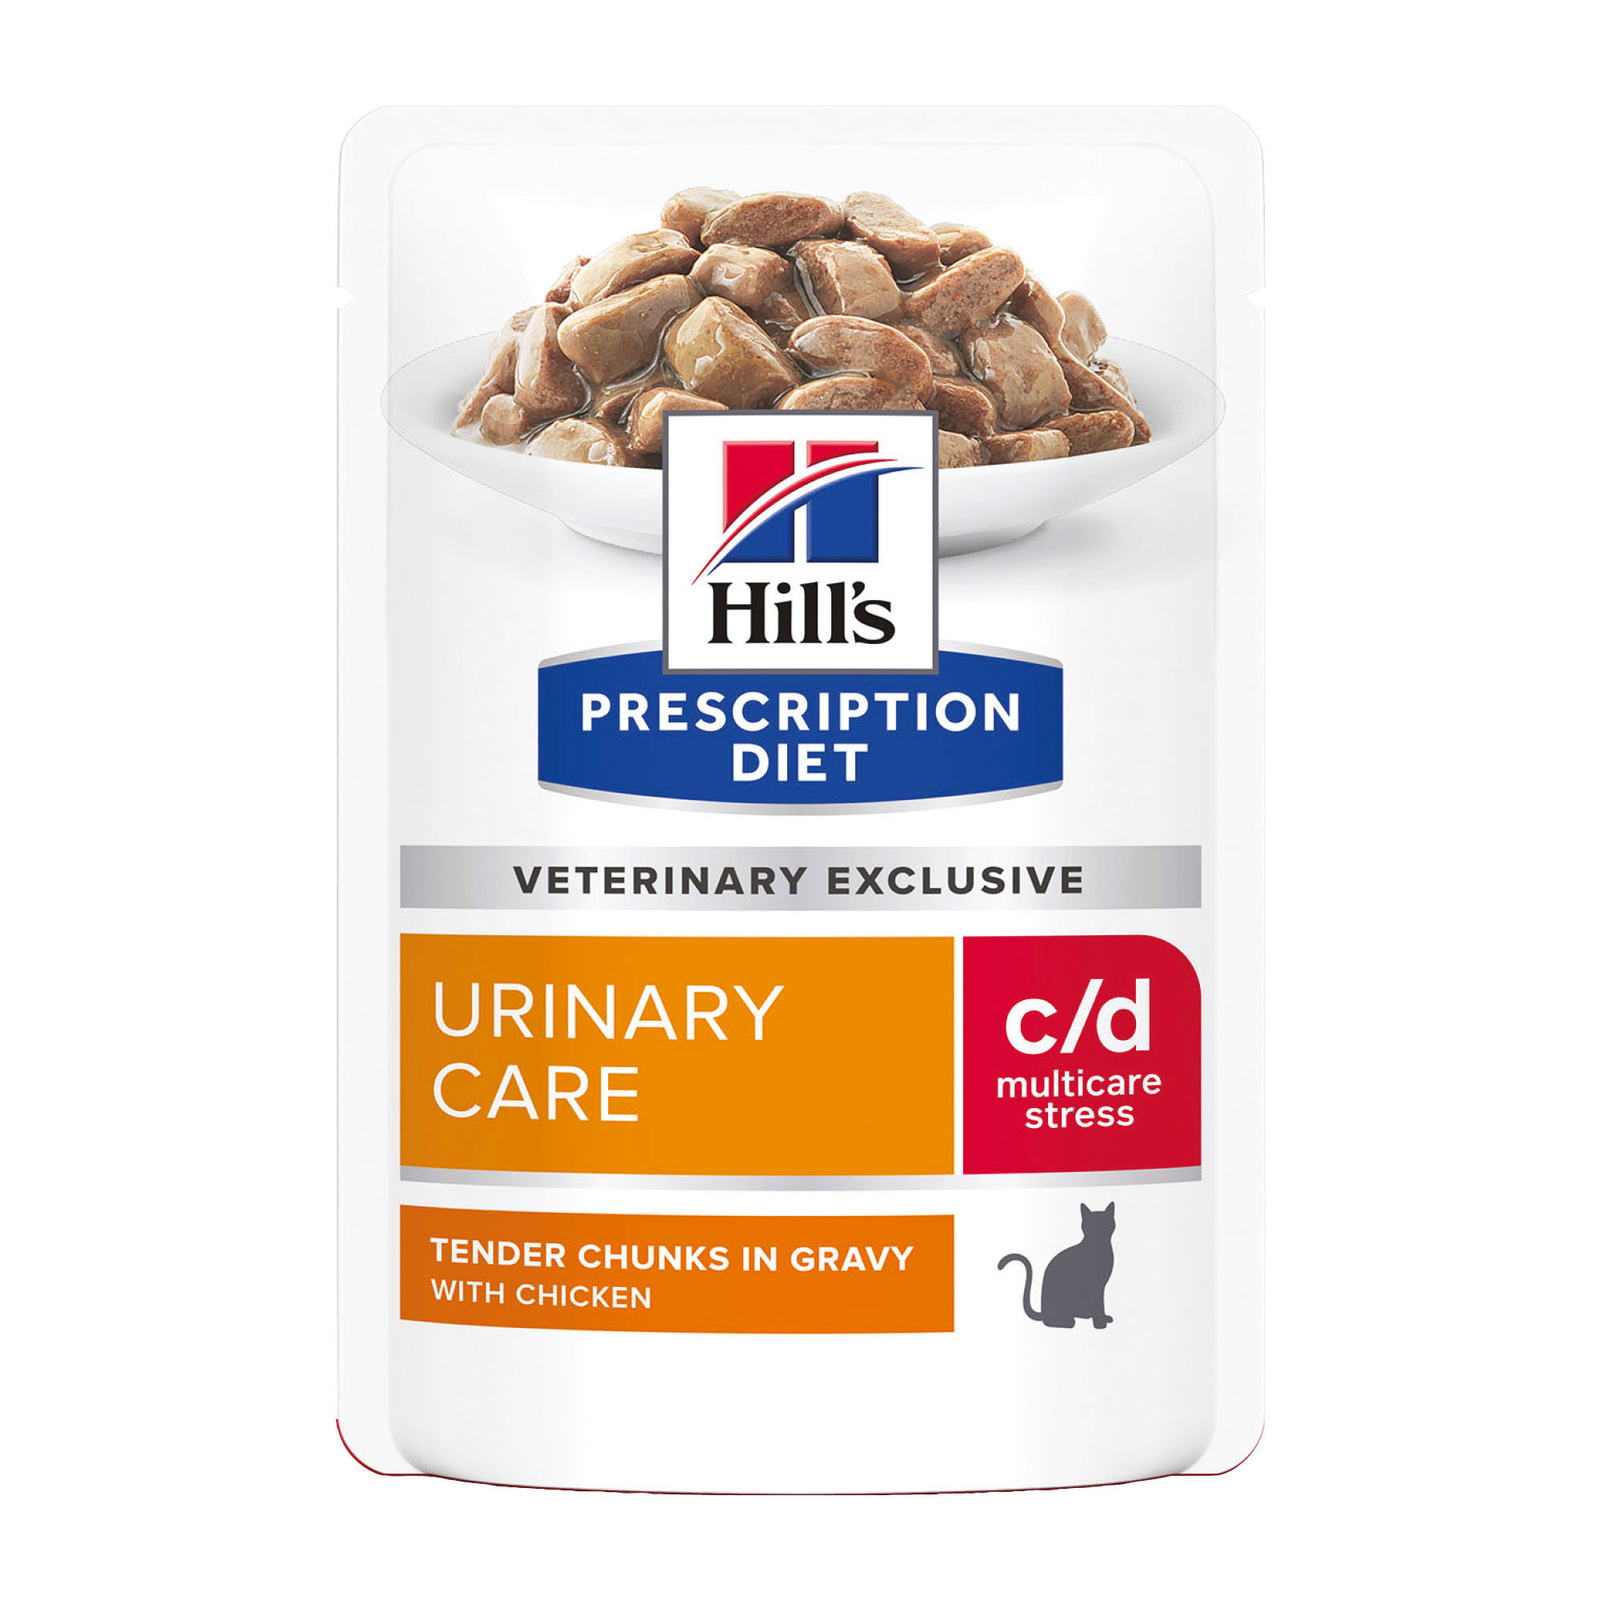 Hill's вет.консервы влажный диетический корм для кошек c/d Multicare Urinary Stress при профилактике цистита и мочекаменной болезни (мкб), в том числе вызванные стрессом, с курицей (85 г) Hill's вет.консервы влажный диетический корм для кошек c/d Multicare Urinary Stress при профилактике - фото 1